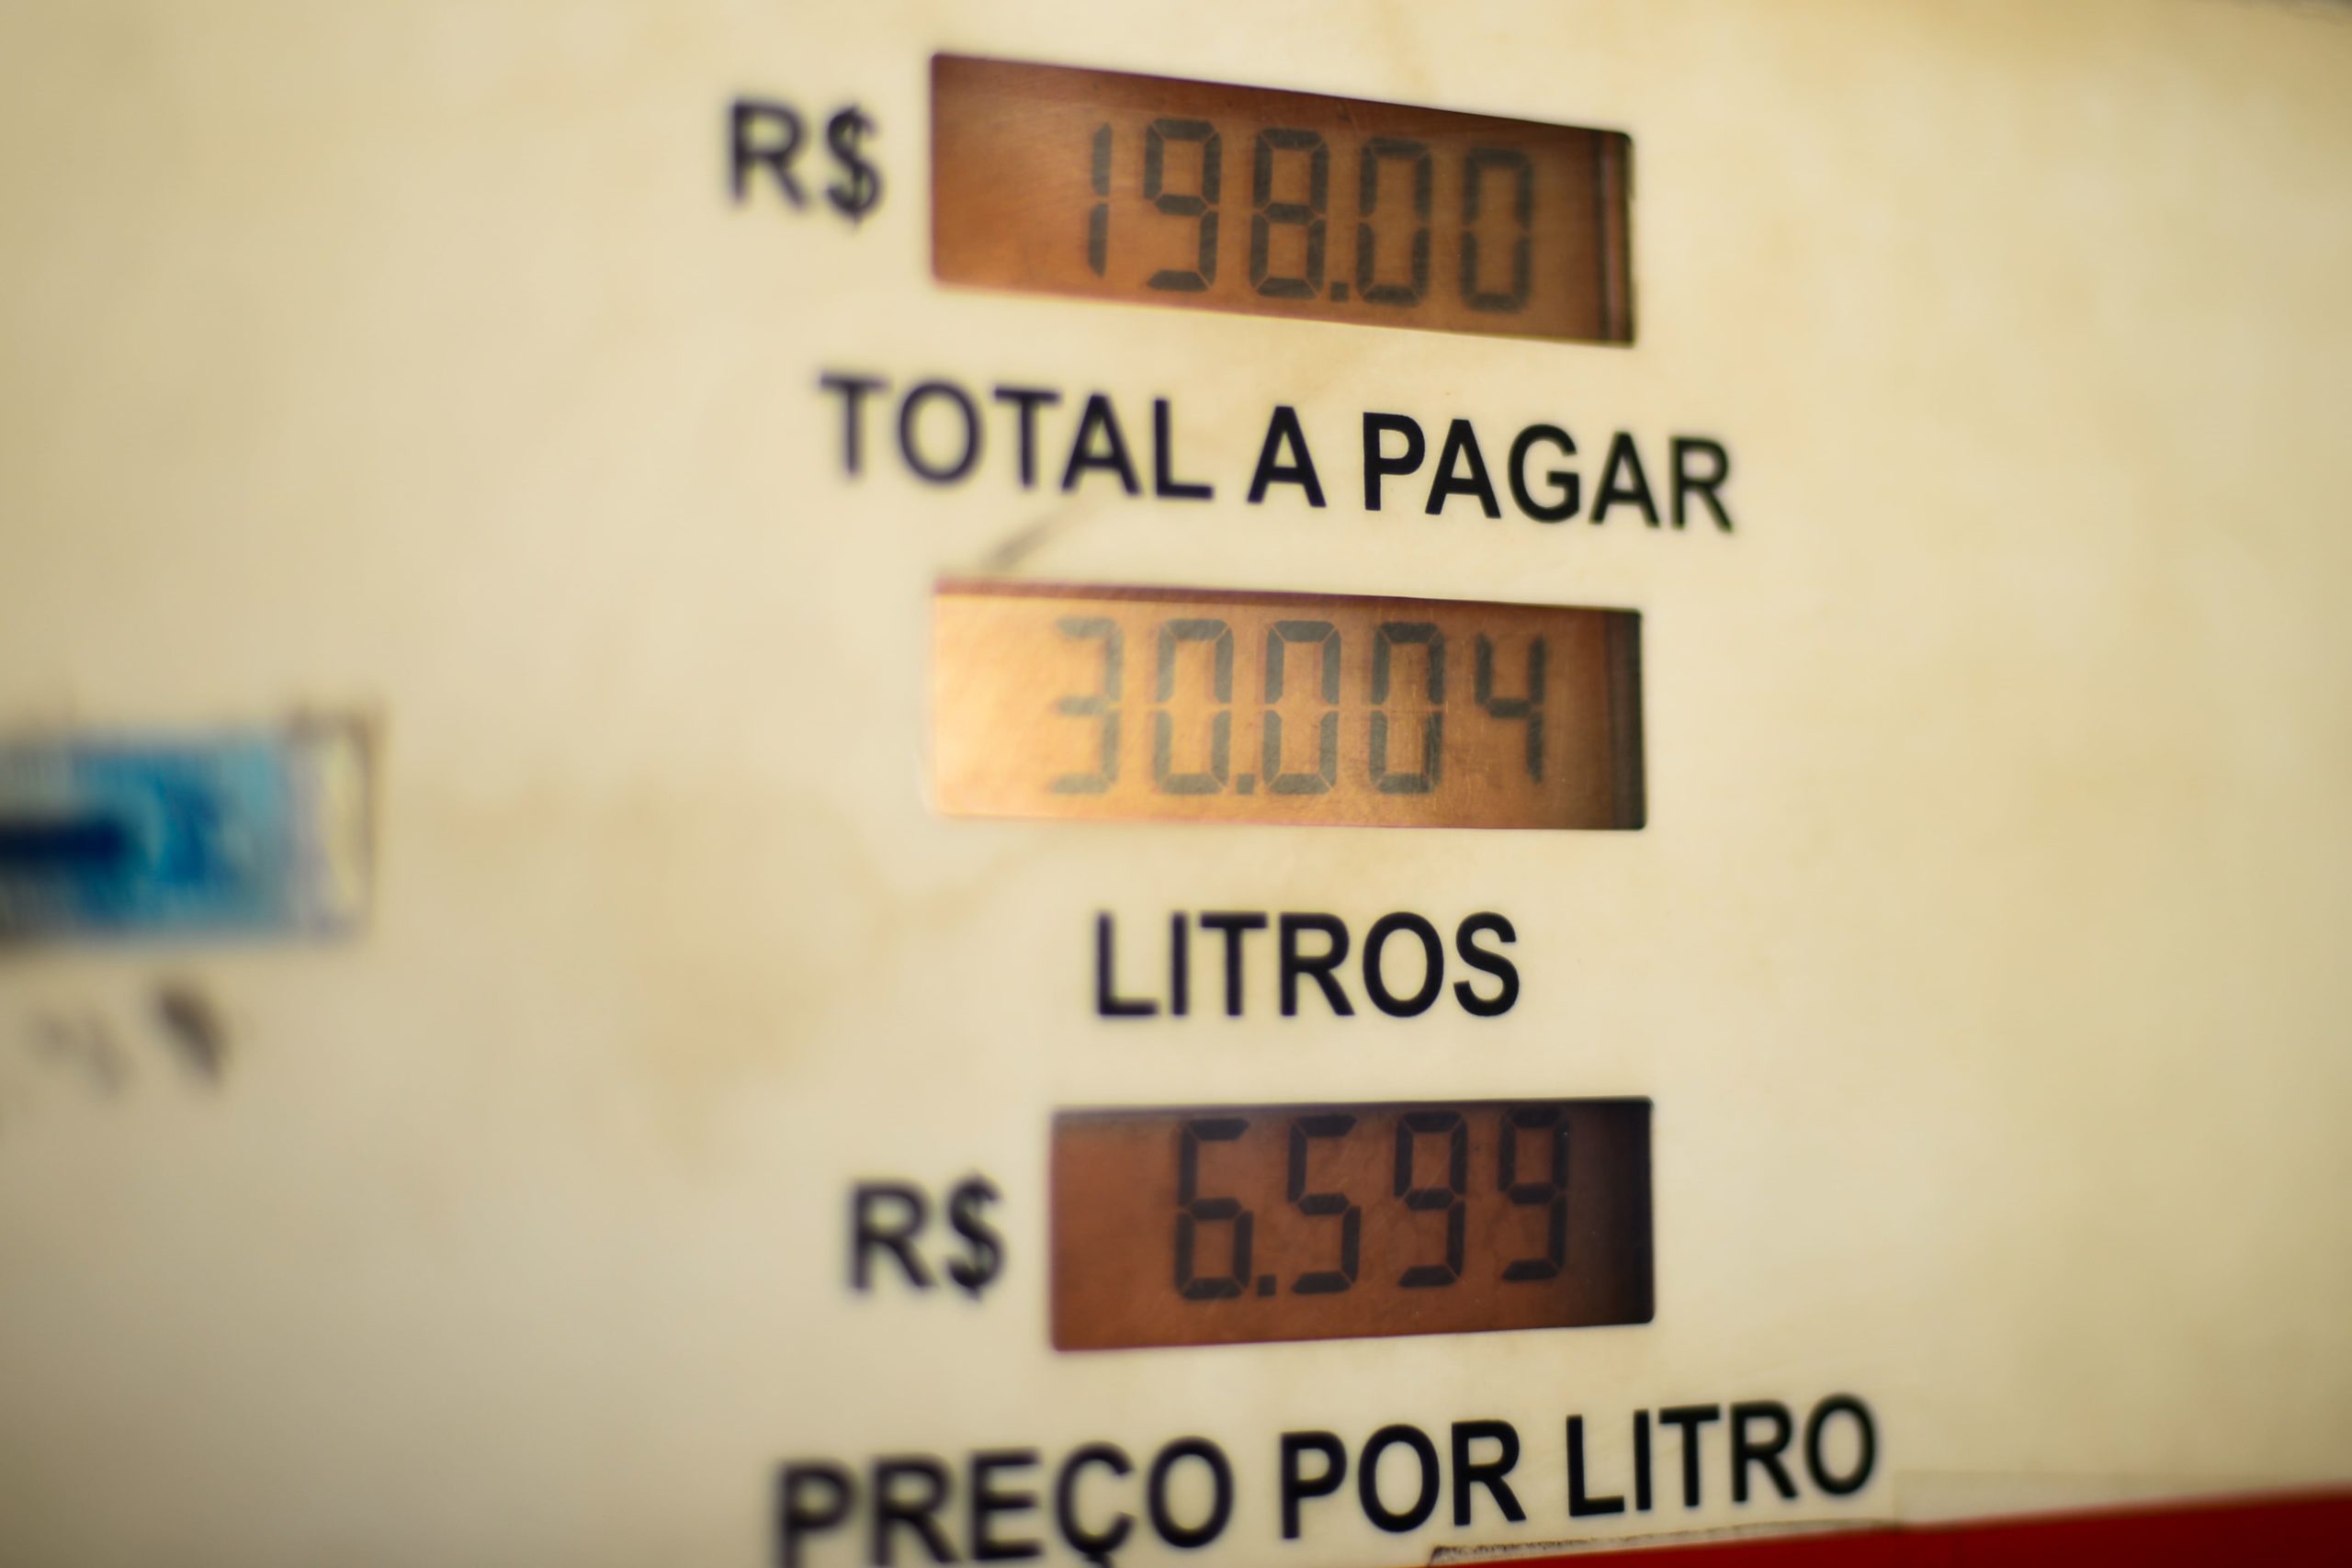 Preço do petróleo atinge o menor nível em dois meses. Na imagem: Marcador eletrônico de bomba de combustíveis com indicação de litragem, preço por litro e total a pagar